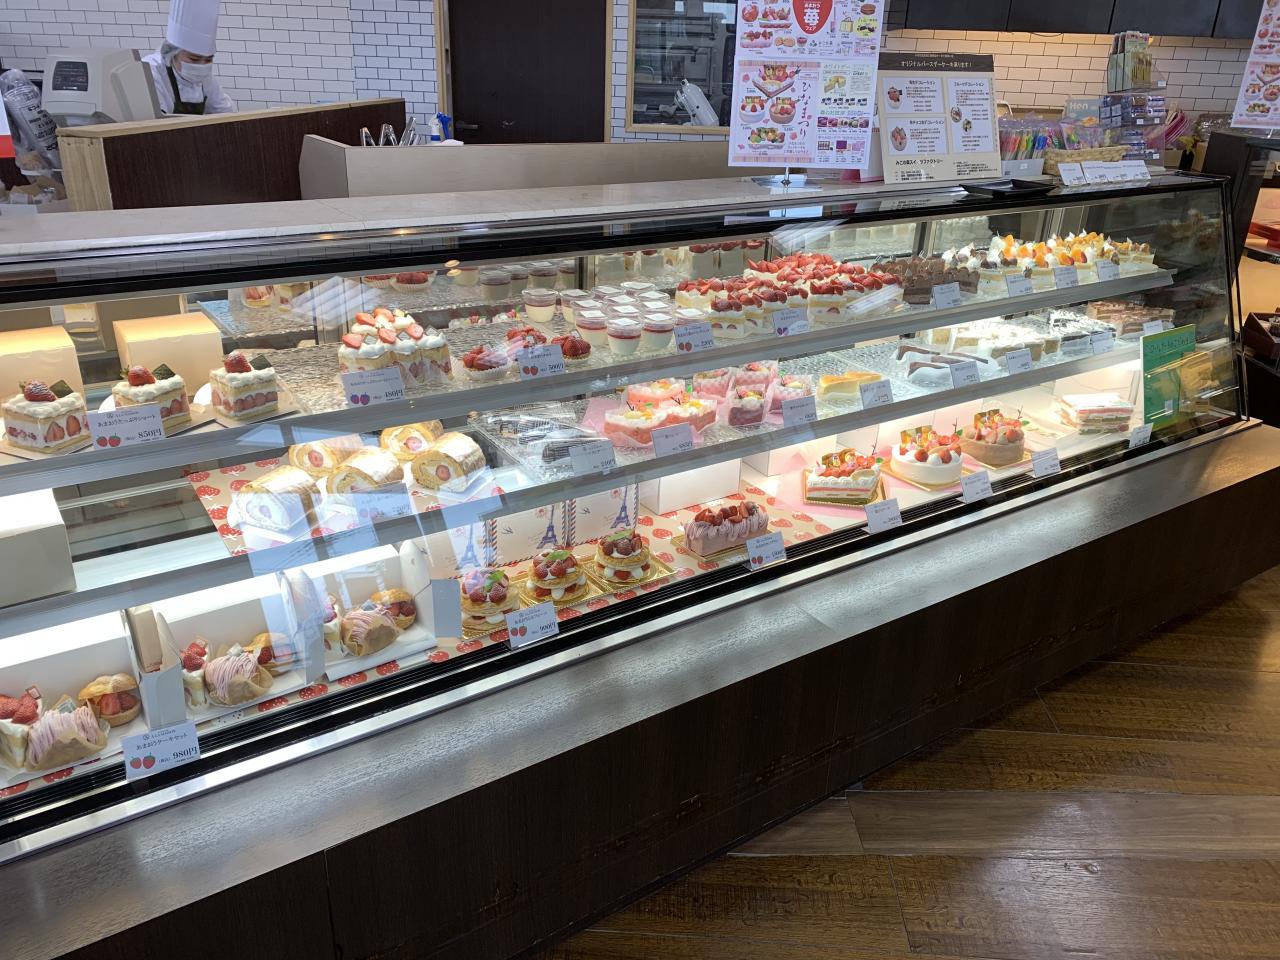 今日のケーキケース 和生菓子のケース 田川のお菓子屋みこの森スイーツファクトリー みこの森スイーツファクトリー